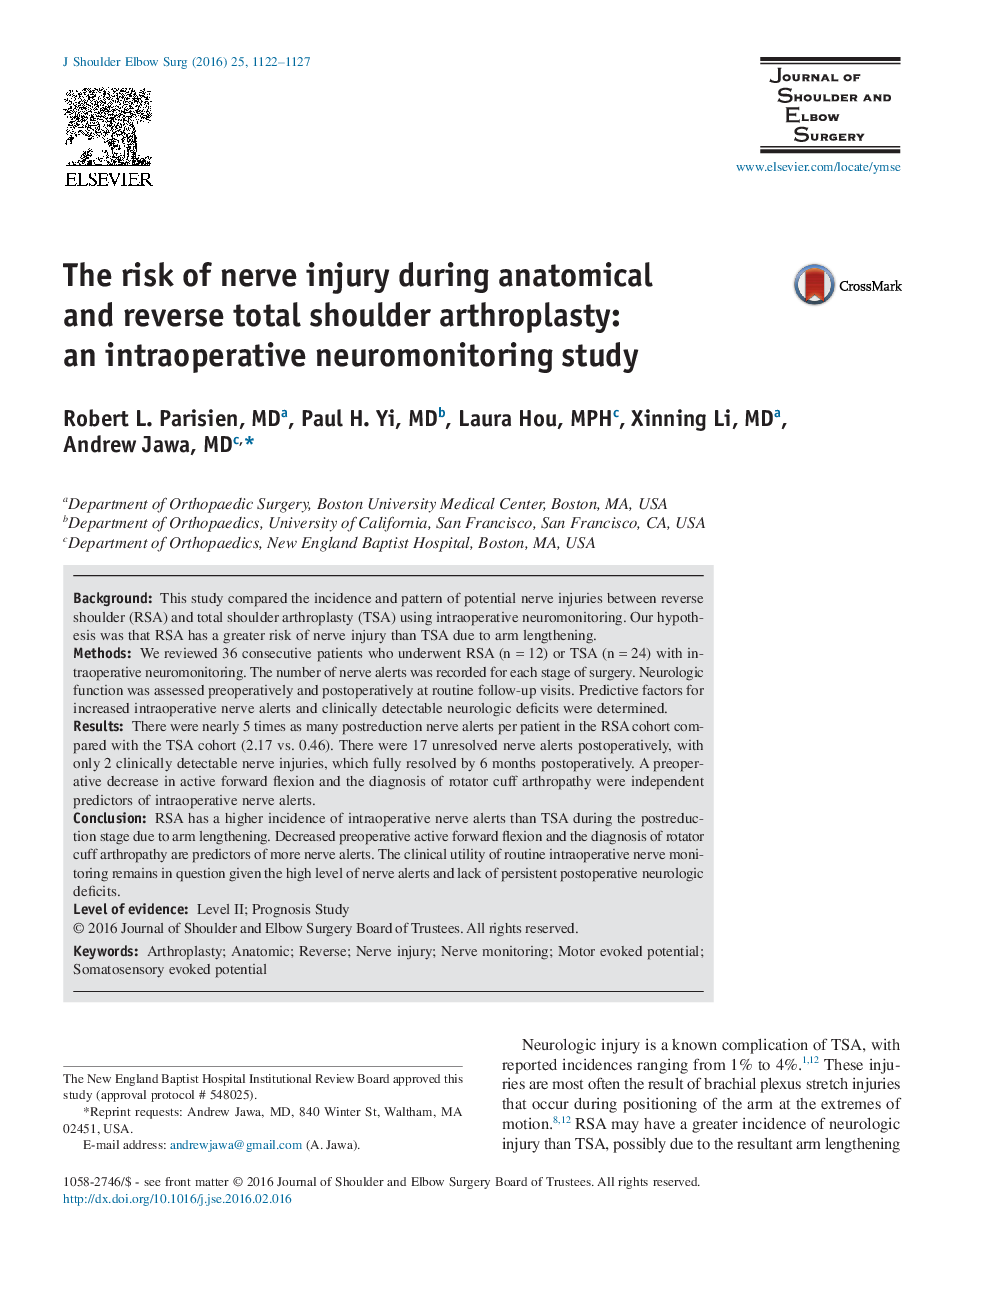 خطر آسیب عصب هنگام آرتروپلاستی شانه آناتومیک و معکوس: یک مطالعه نئومونوئیدینگ درون عمل 